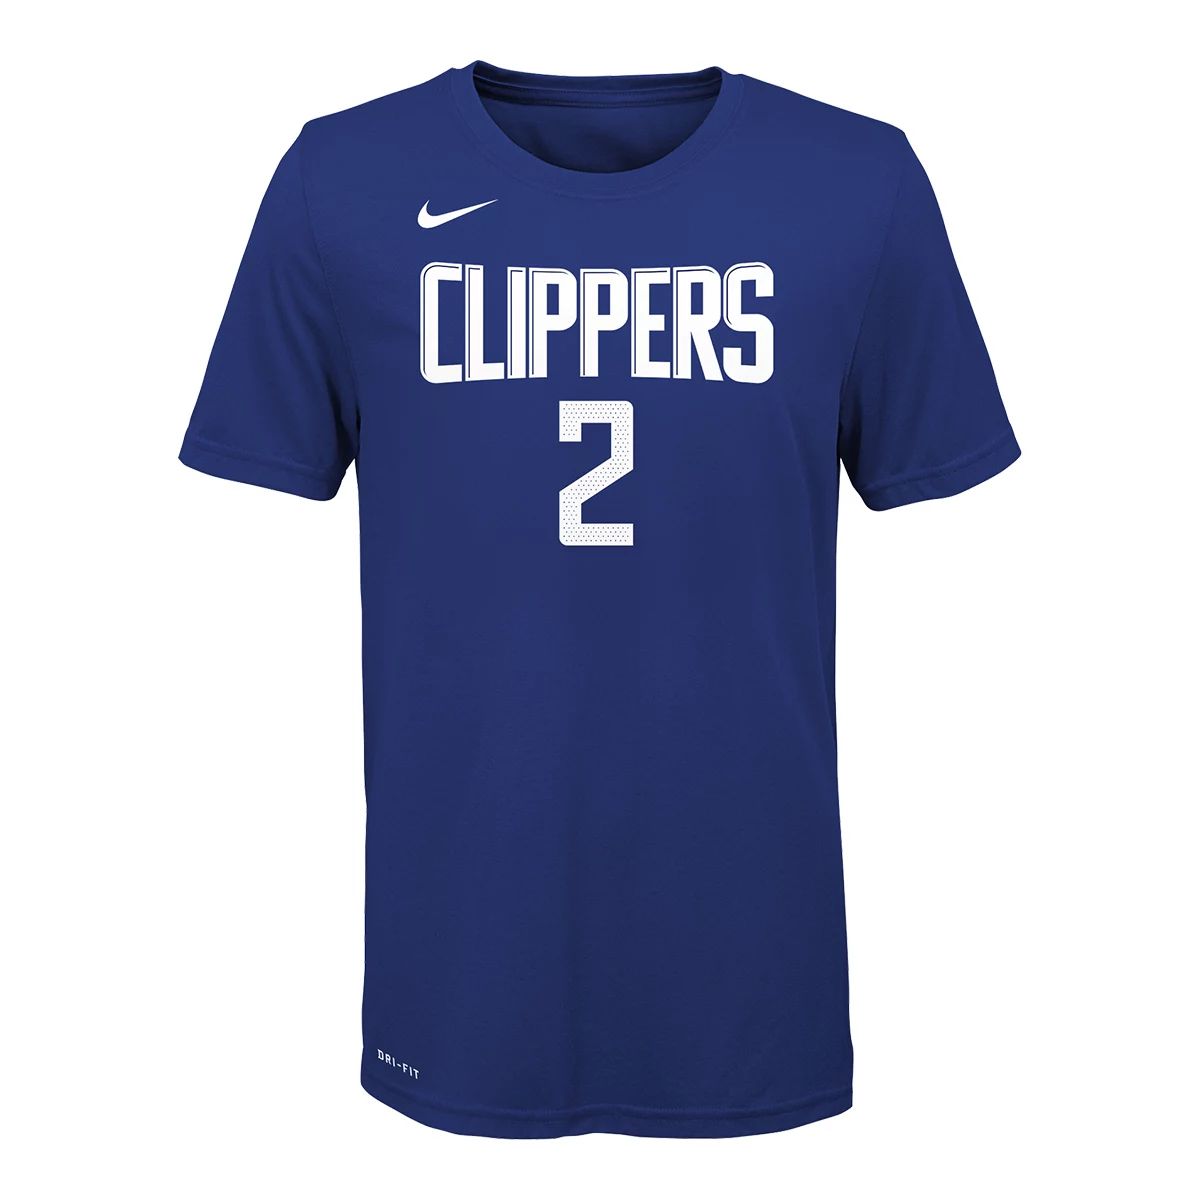 Nike La Clippers Kawhi Leonard Icon Swingman Jersey L / Blue